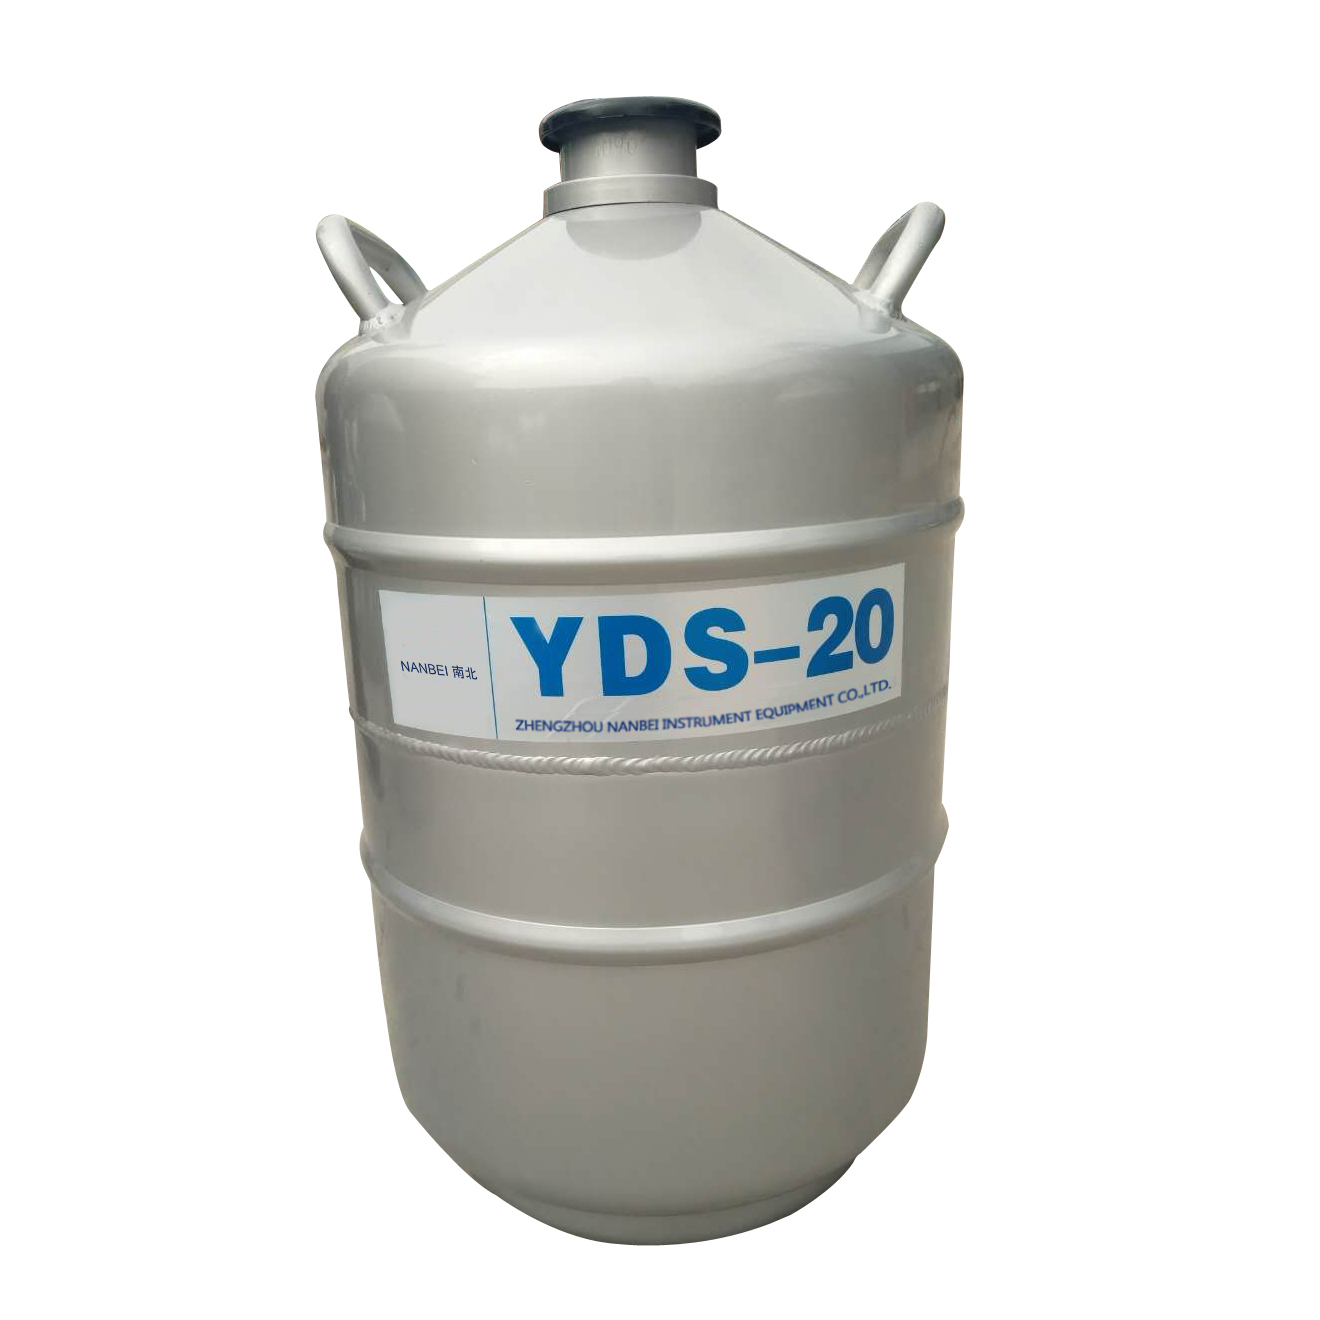 YDS-20 저장 형 액체 질소 용기